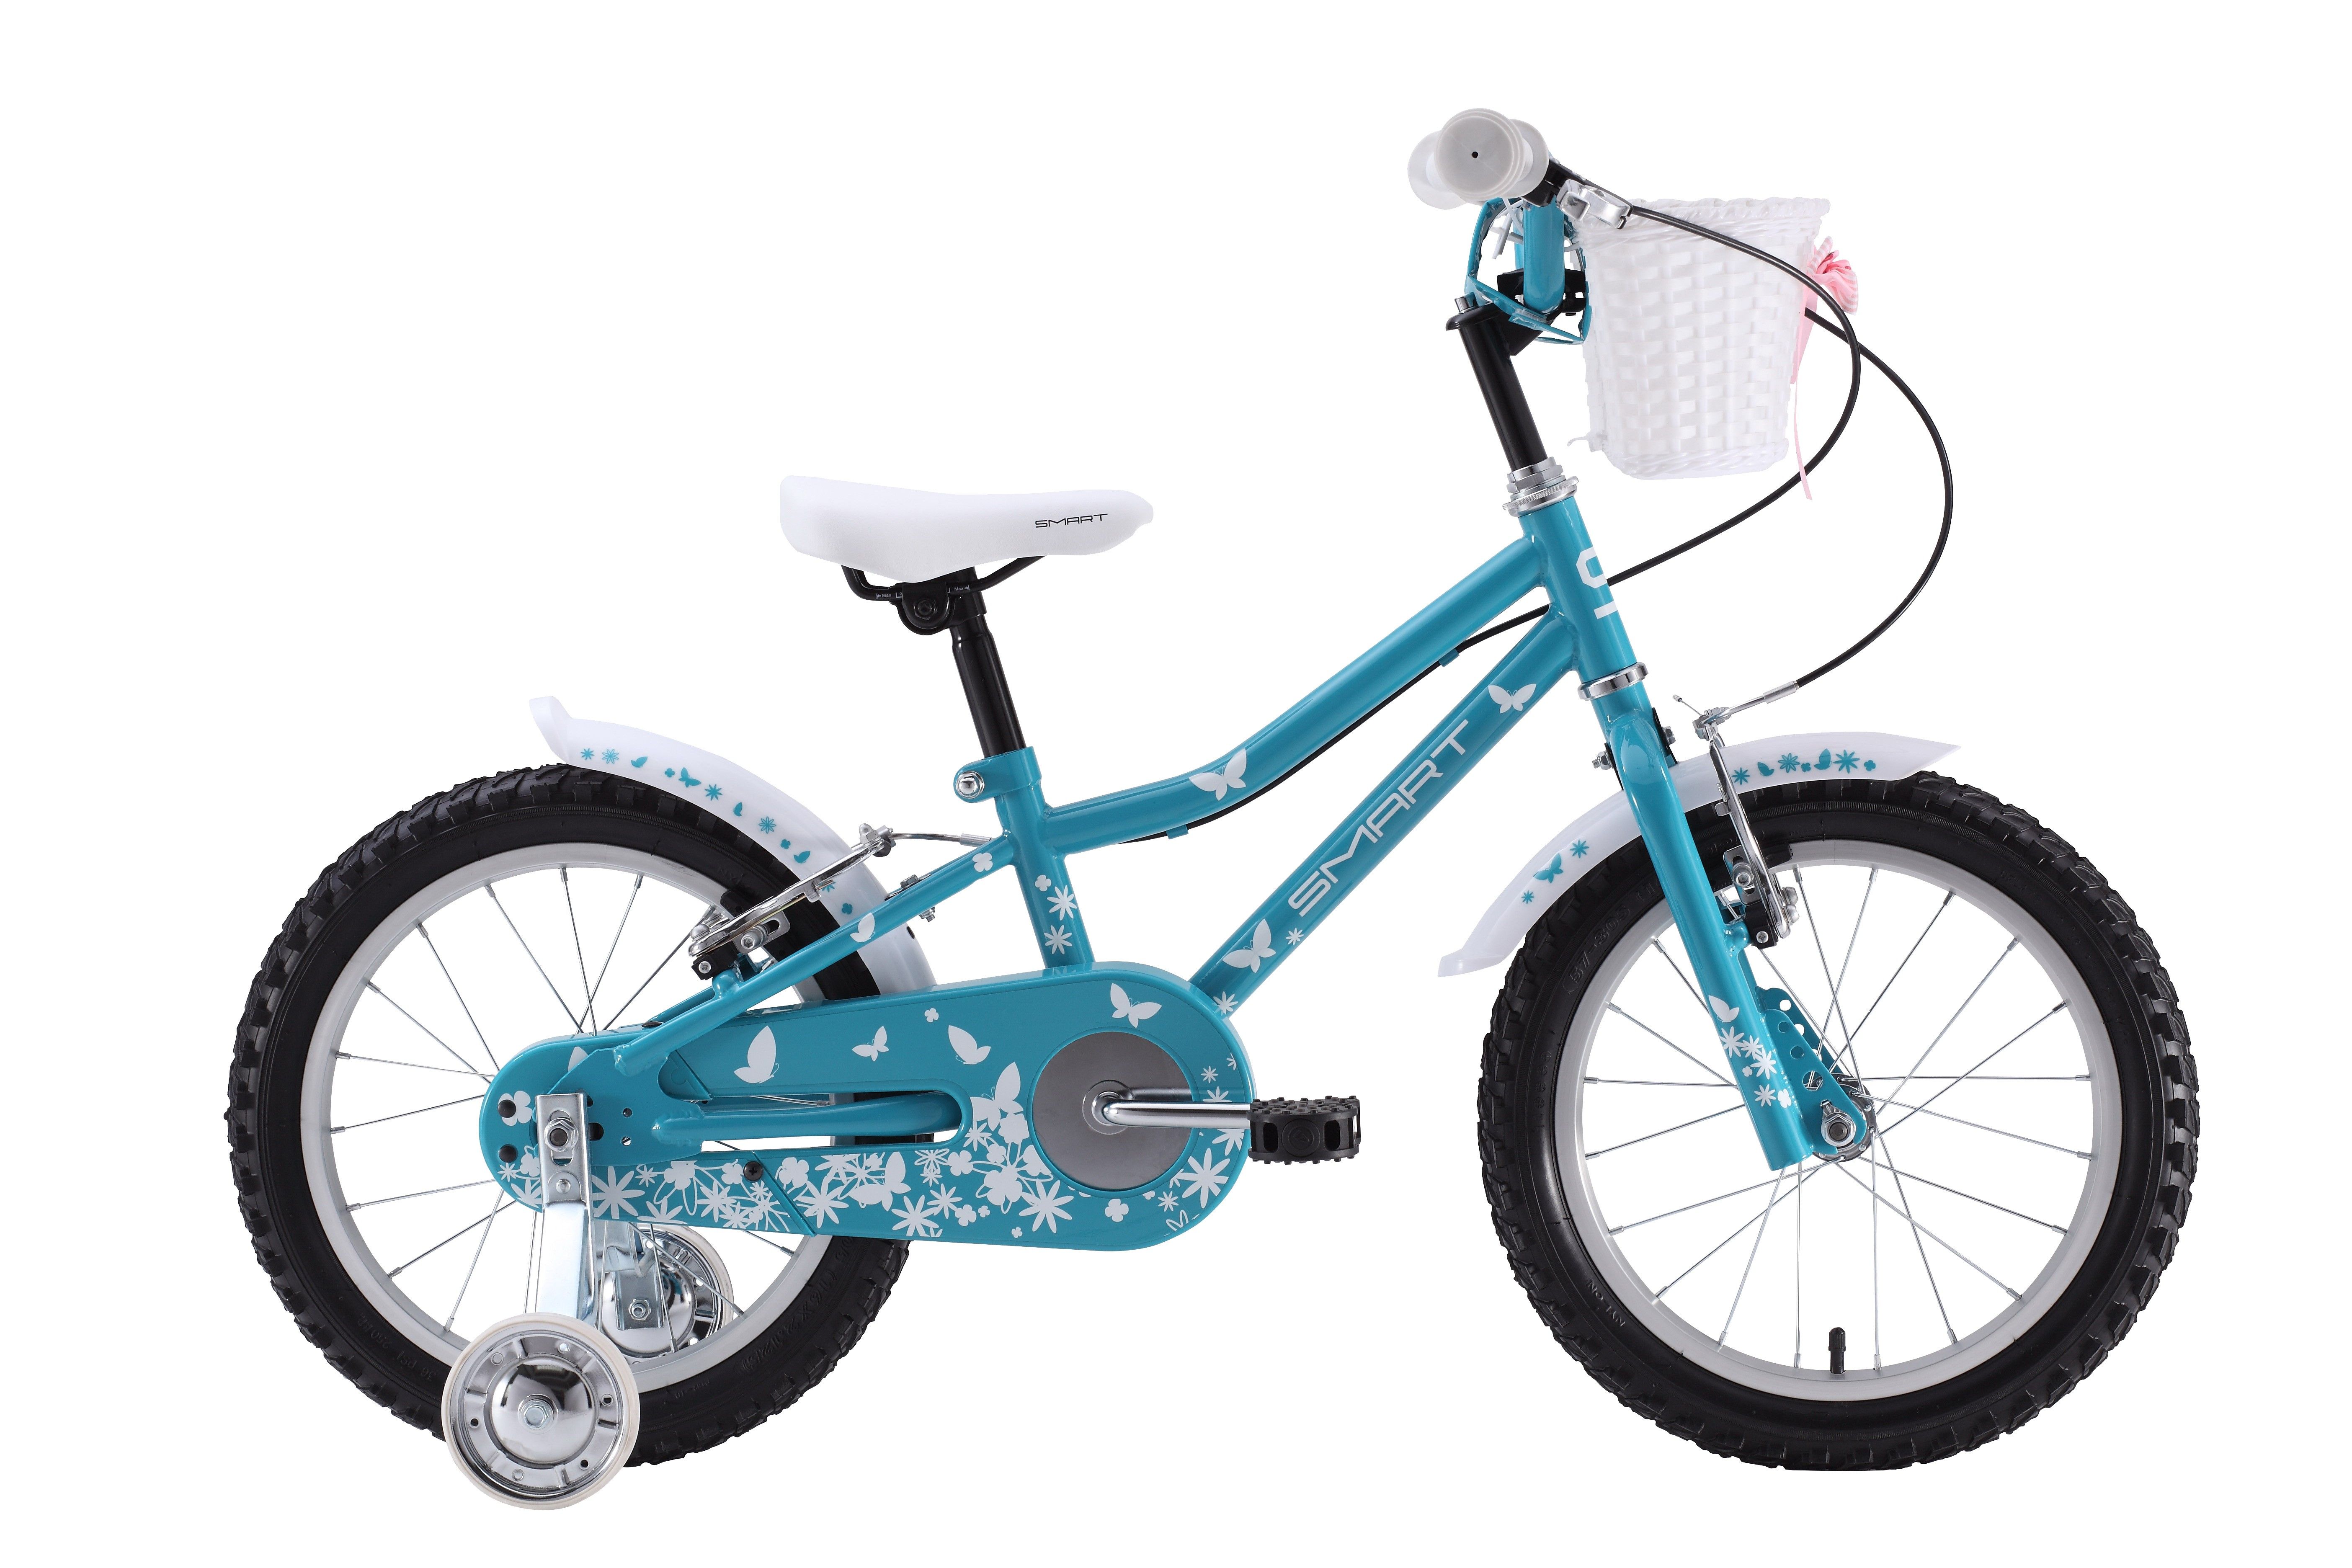  Отзывы о Детском велосипеде Smart Girl 2015